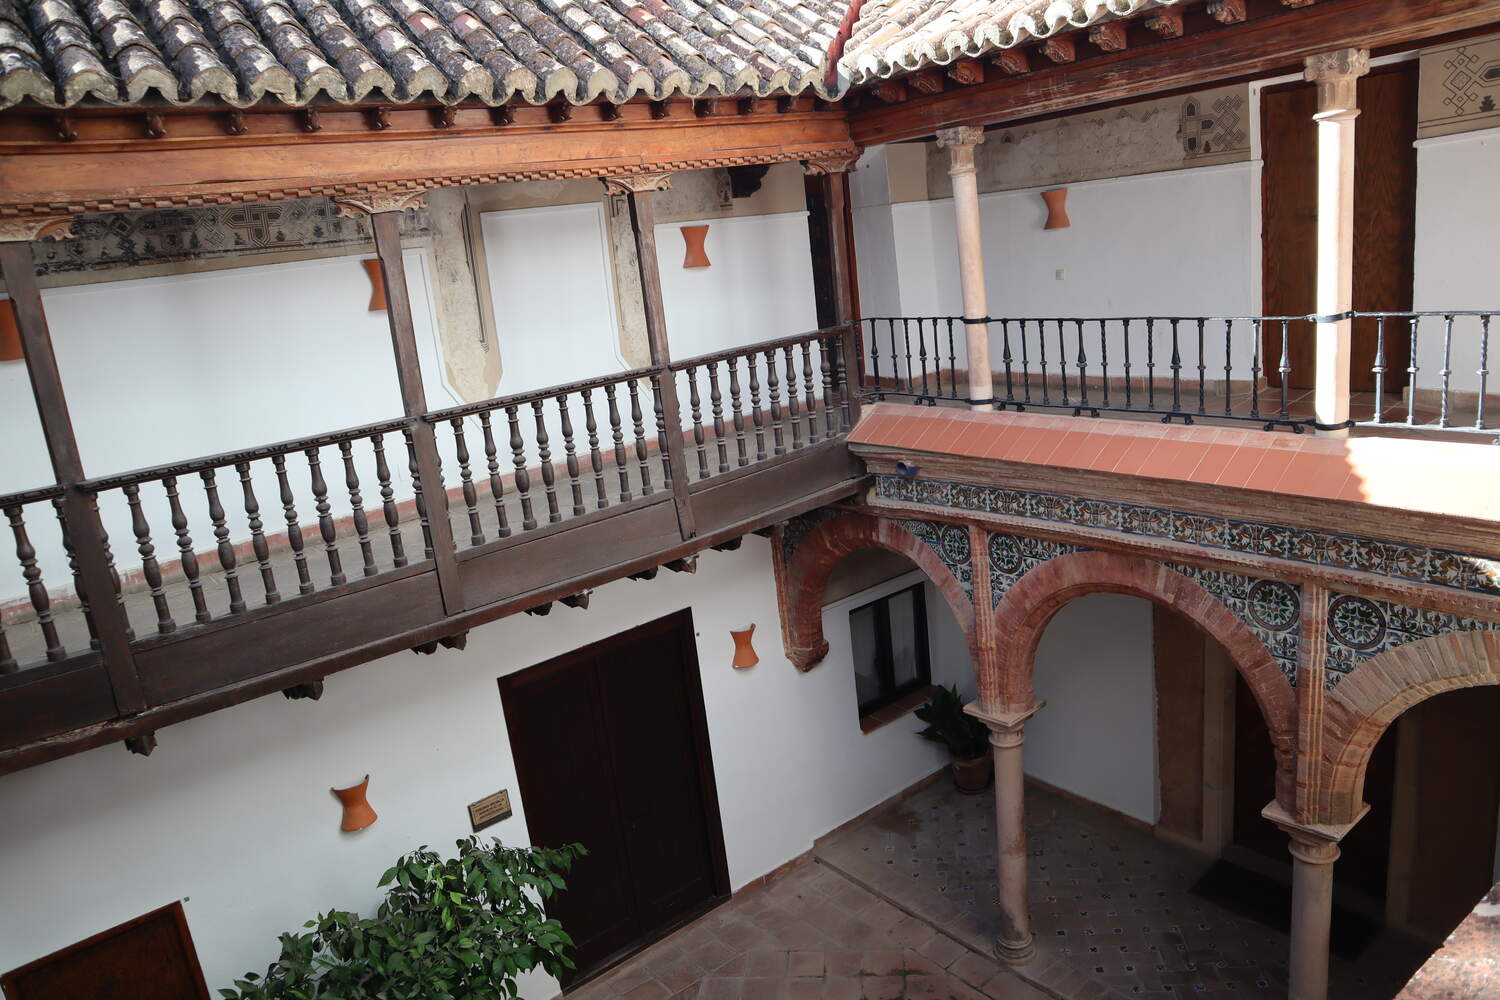 Views of the courtyard at the Palacio de Mondragon